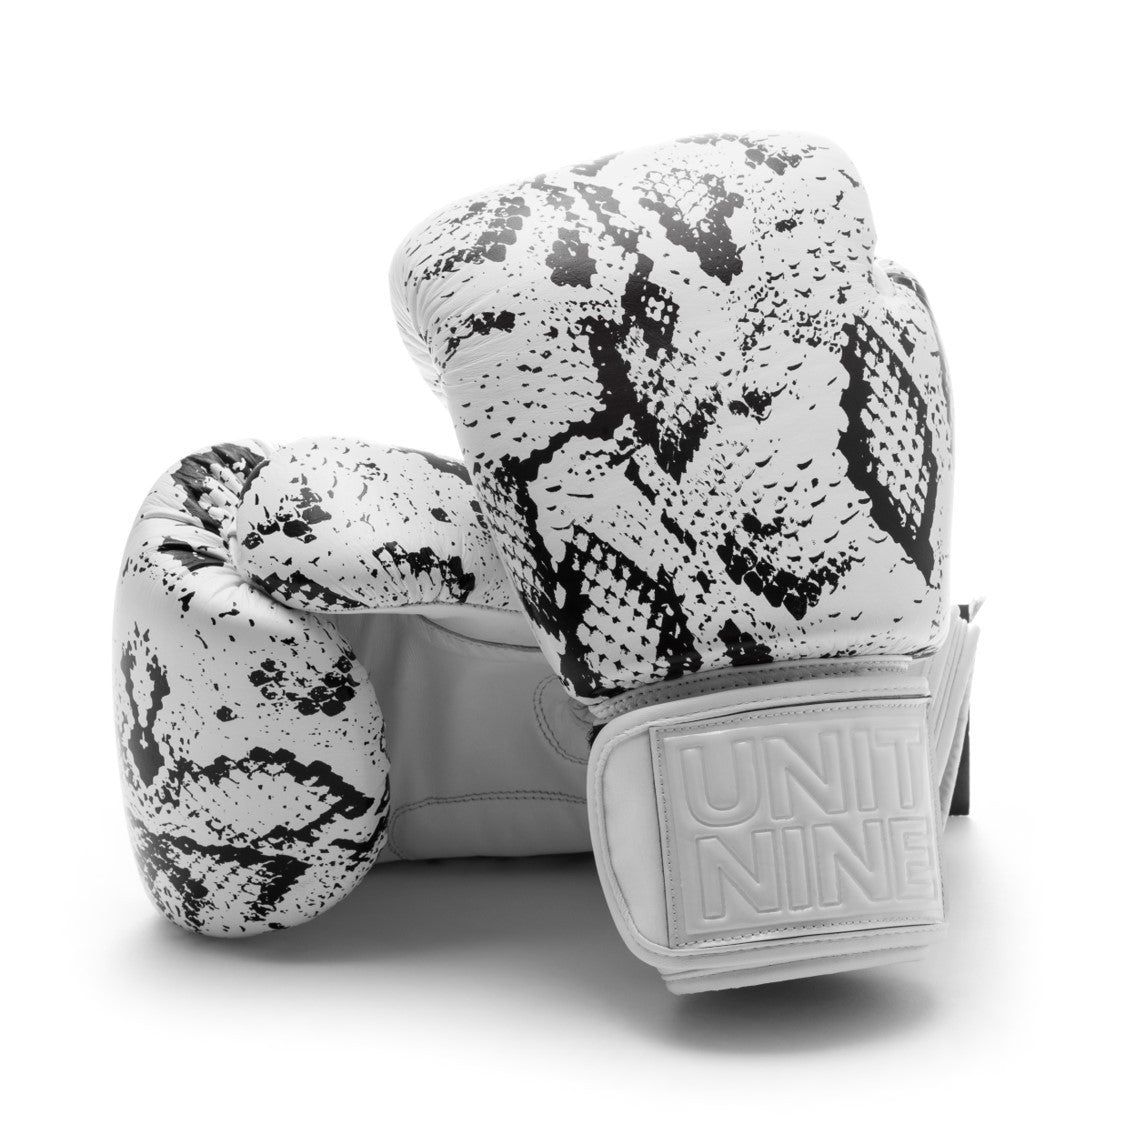 UNIT NINE White Python Boxing Gloves – Unit Nine